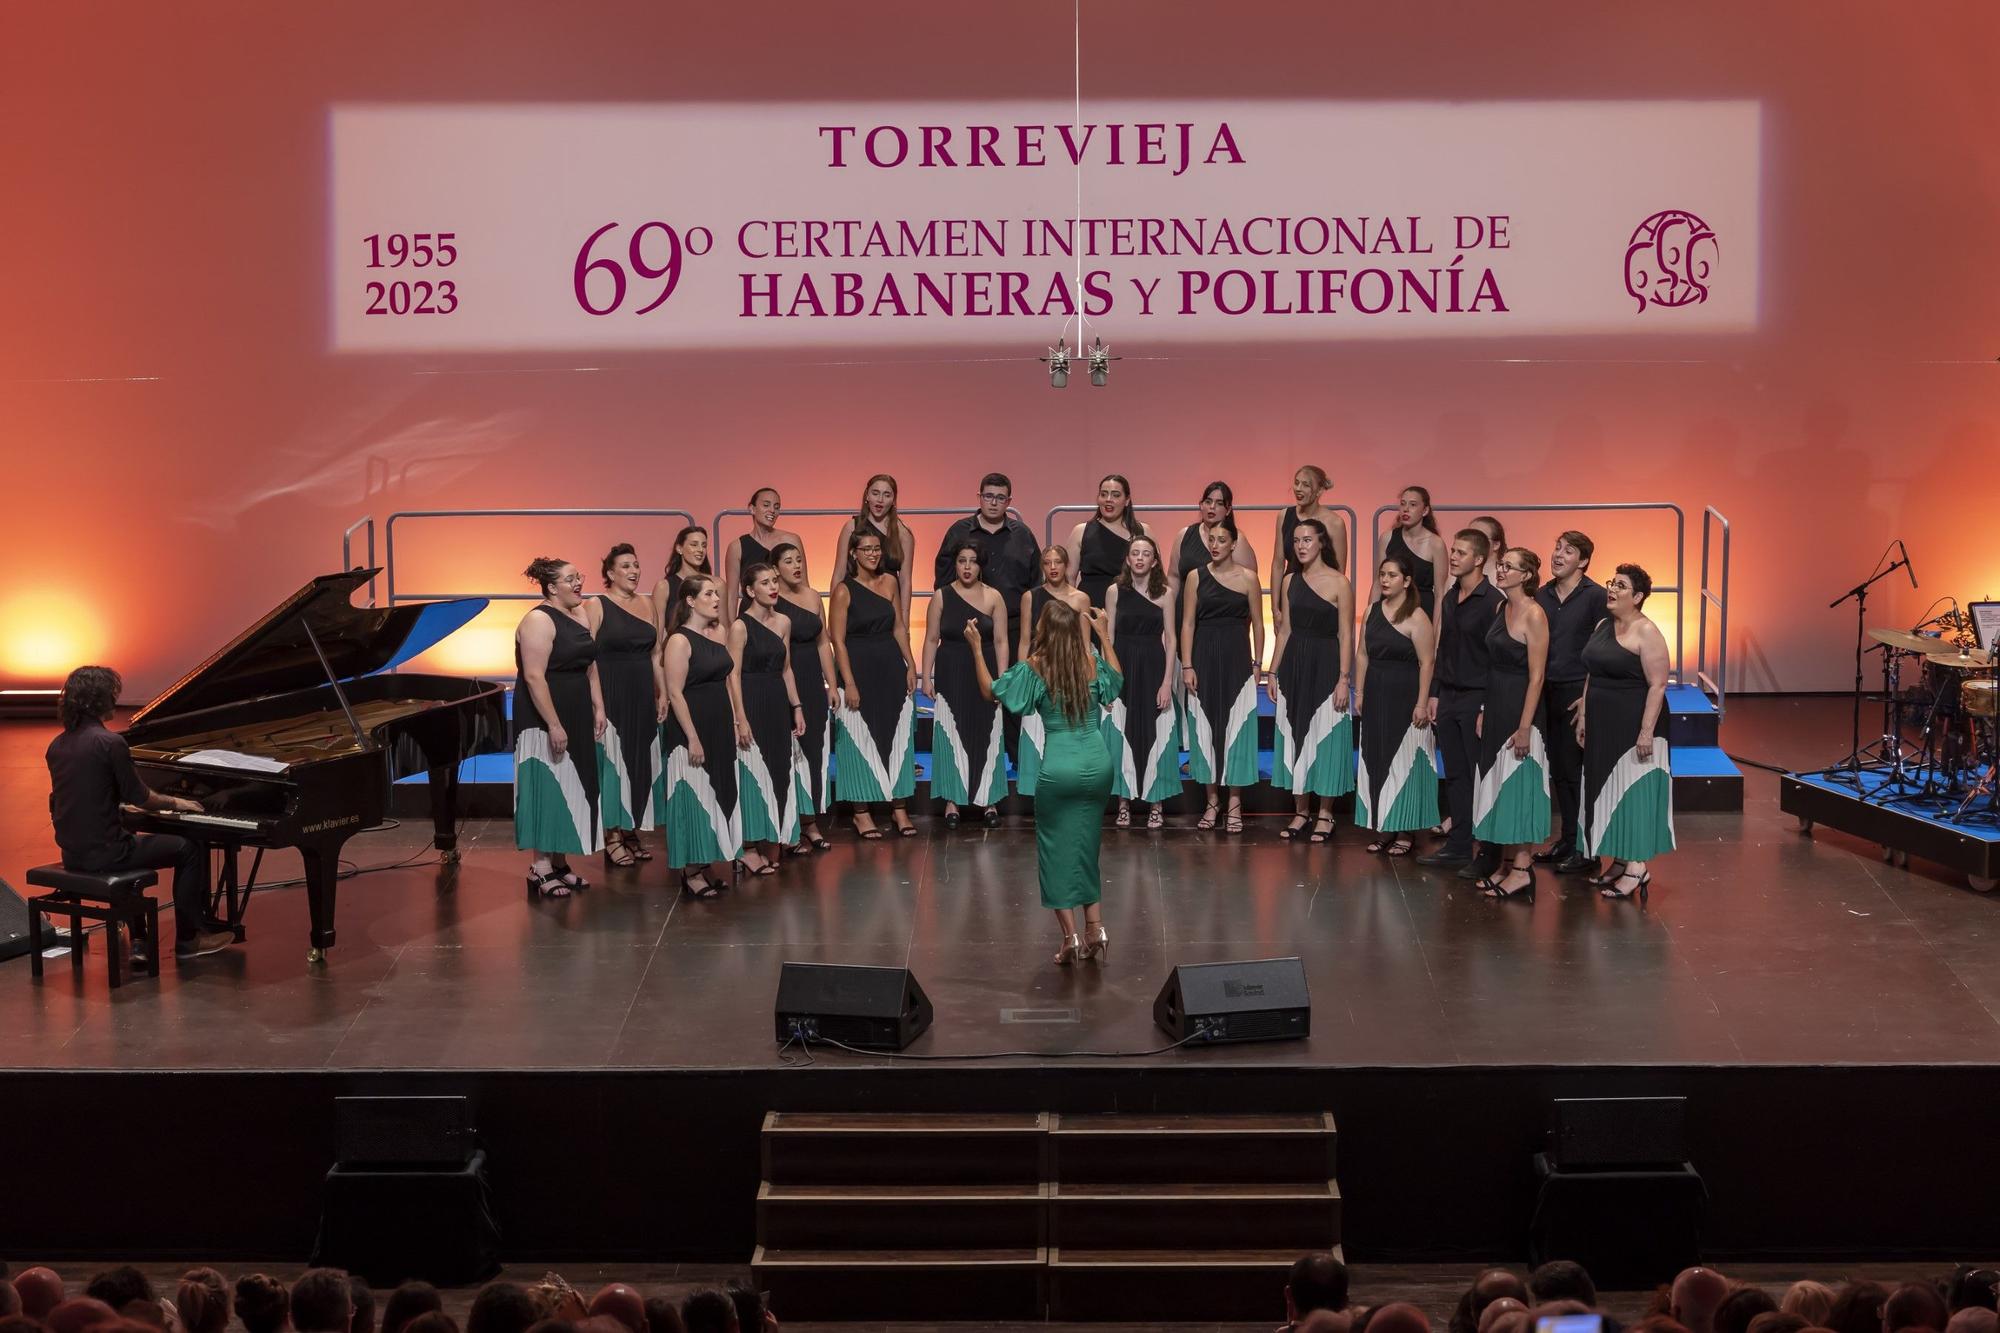 Gala inaugural del Certamen Internacional de Habaneras y Polifonía de Torrevieja con la actuación de Pasión Vega